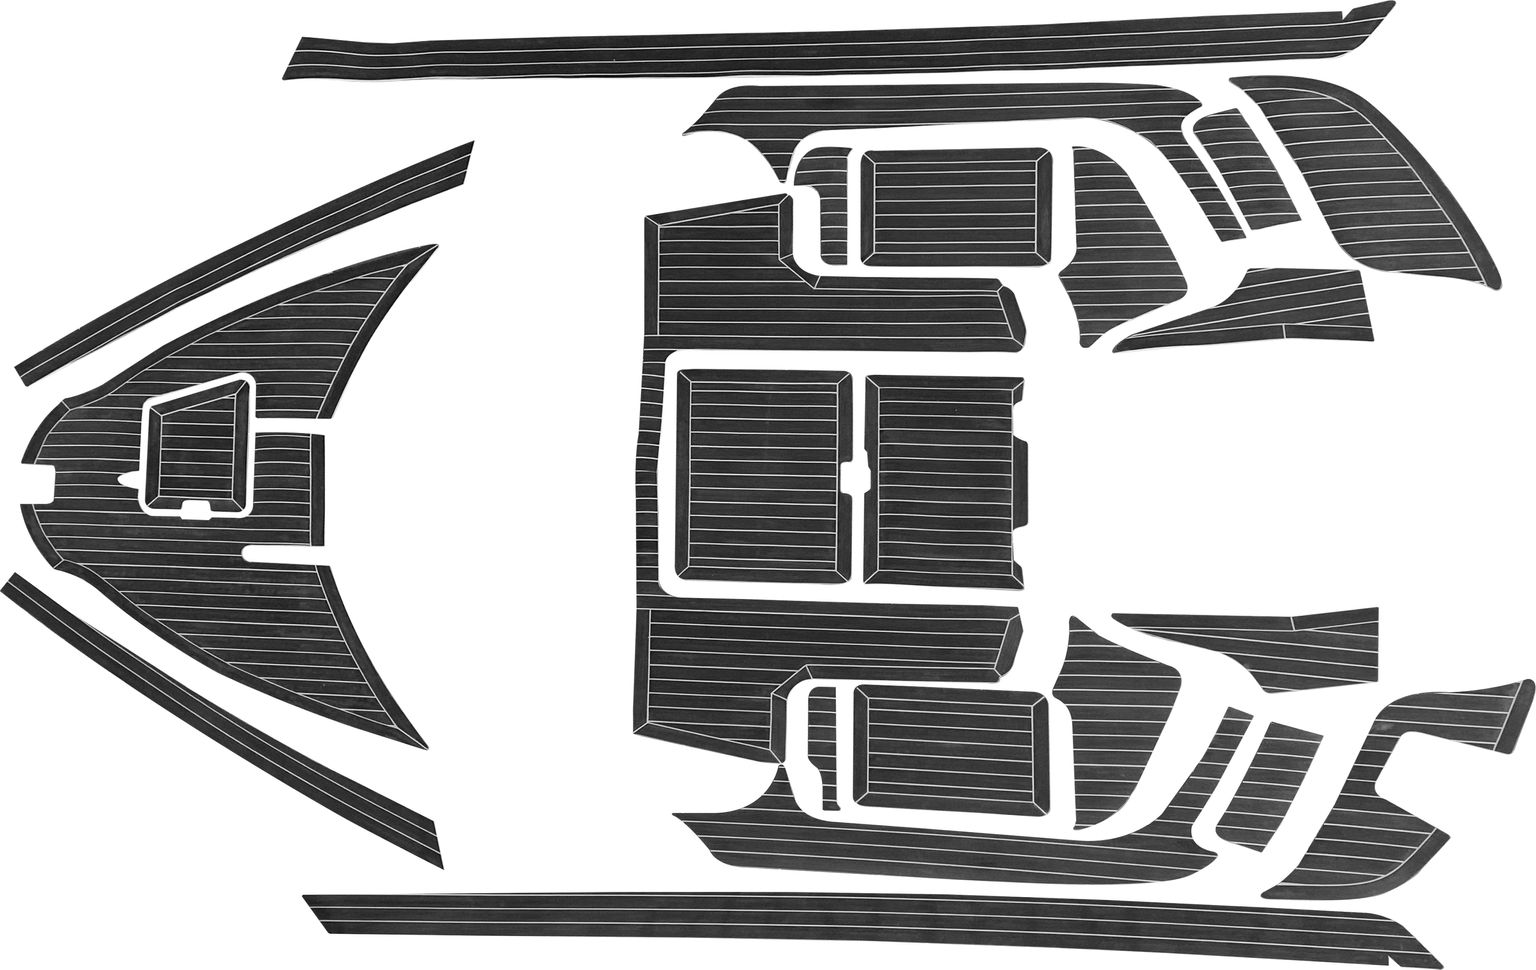 Комплект палубного покрытия для Yamaha CR-27, тик черный, белая полоса, с обкладкой, Marine Rocket teak_CR27_black_2 комплект палубного покрытия для феникс 510br тик классический с обкладкой marine rocket teak 510br classic 2